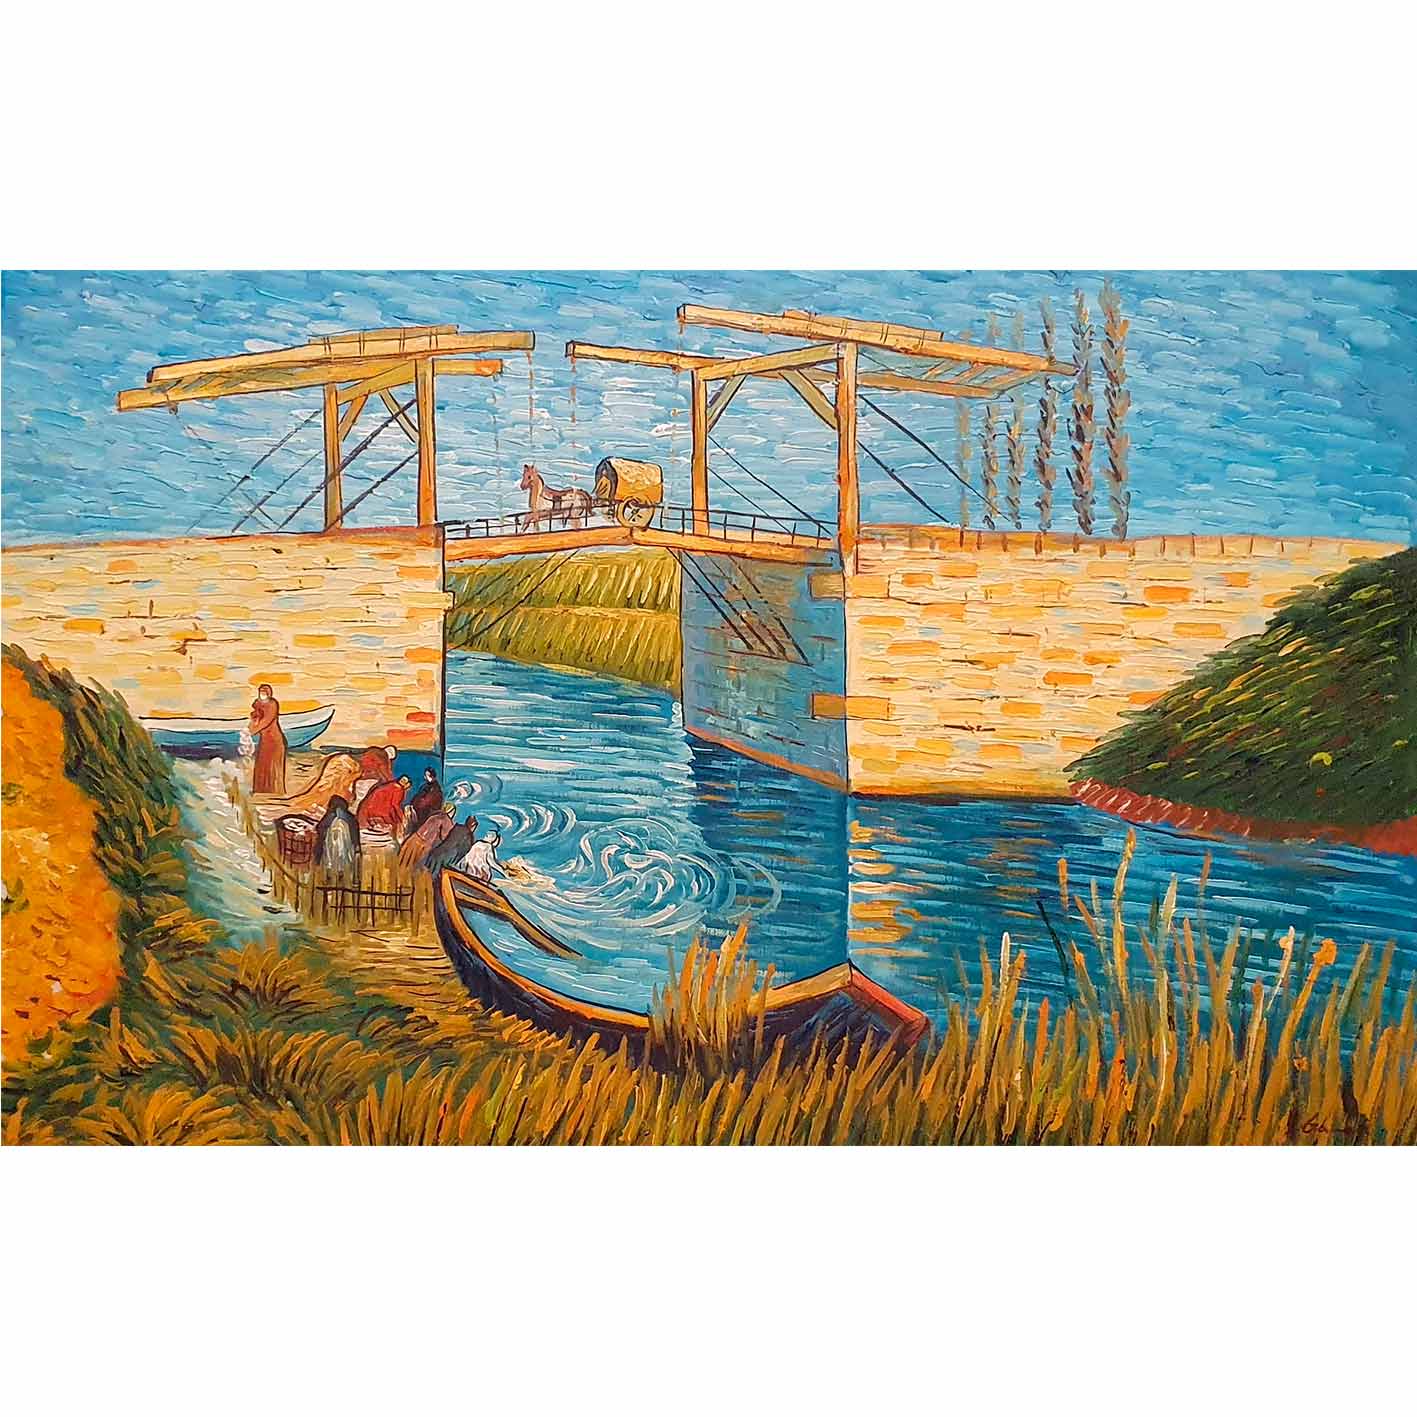 The Langlois Bridge at Arles with Women Washing 90x60 cm